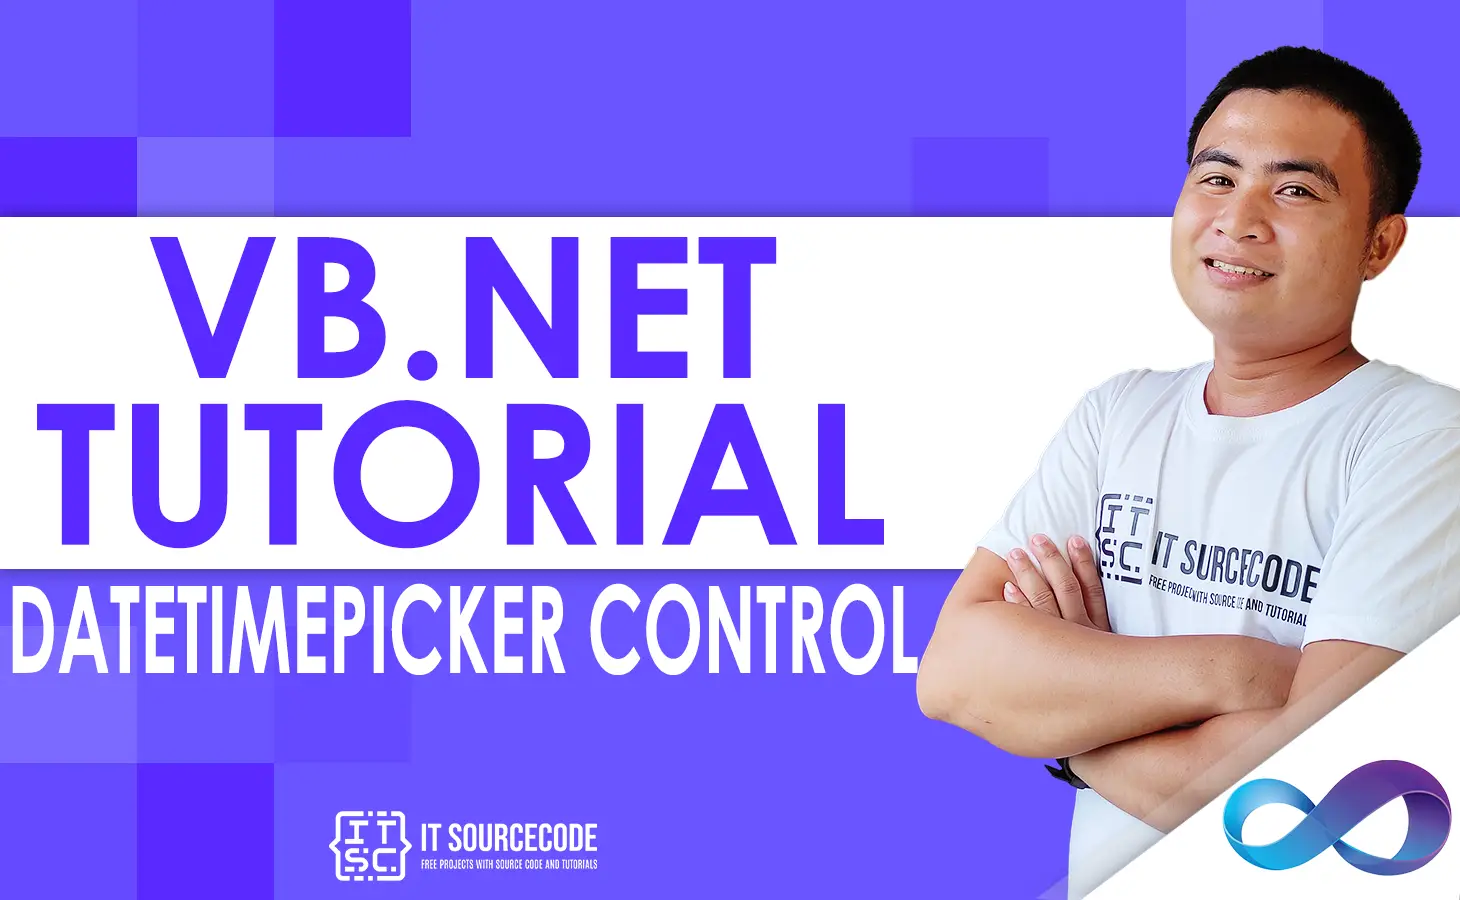 DateTimePicker Control in VB.net